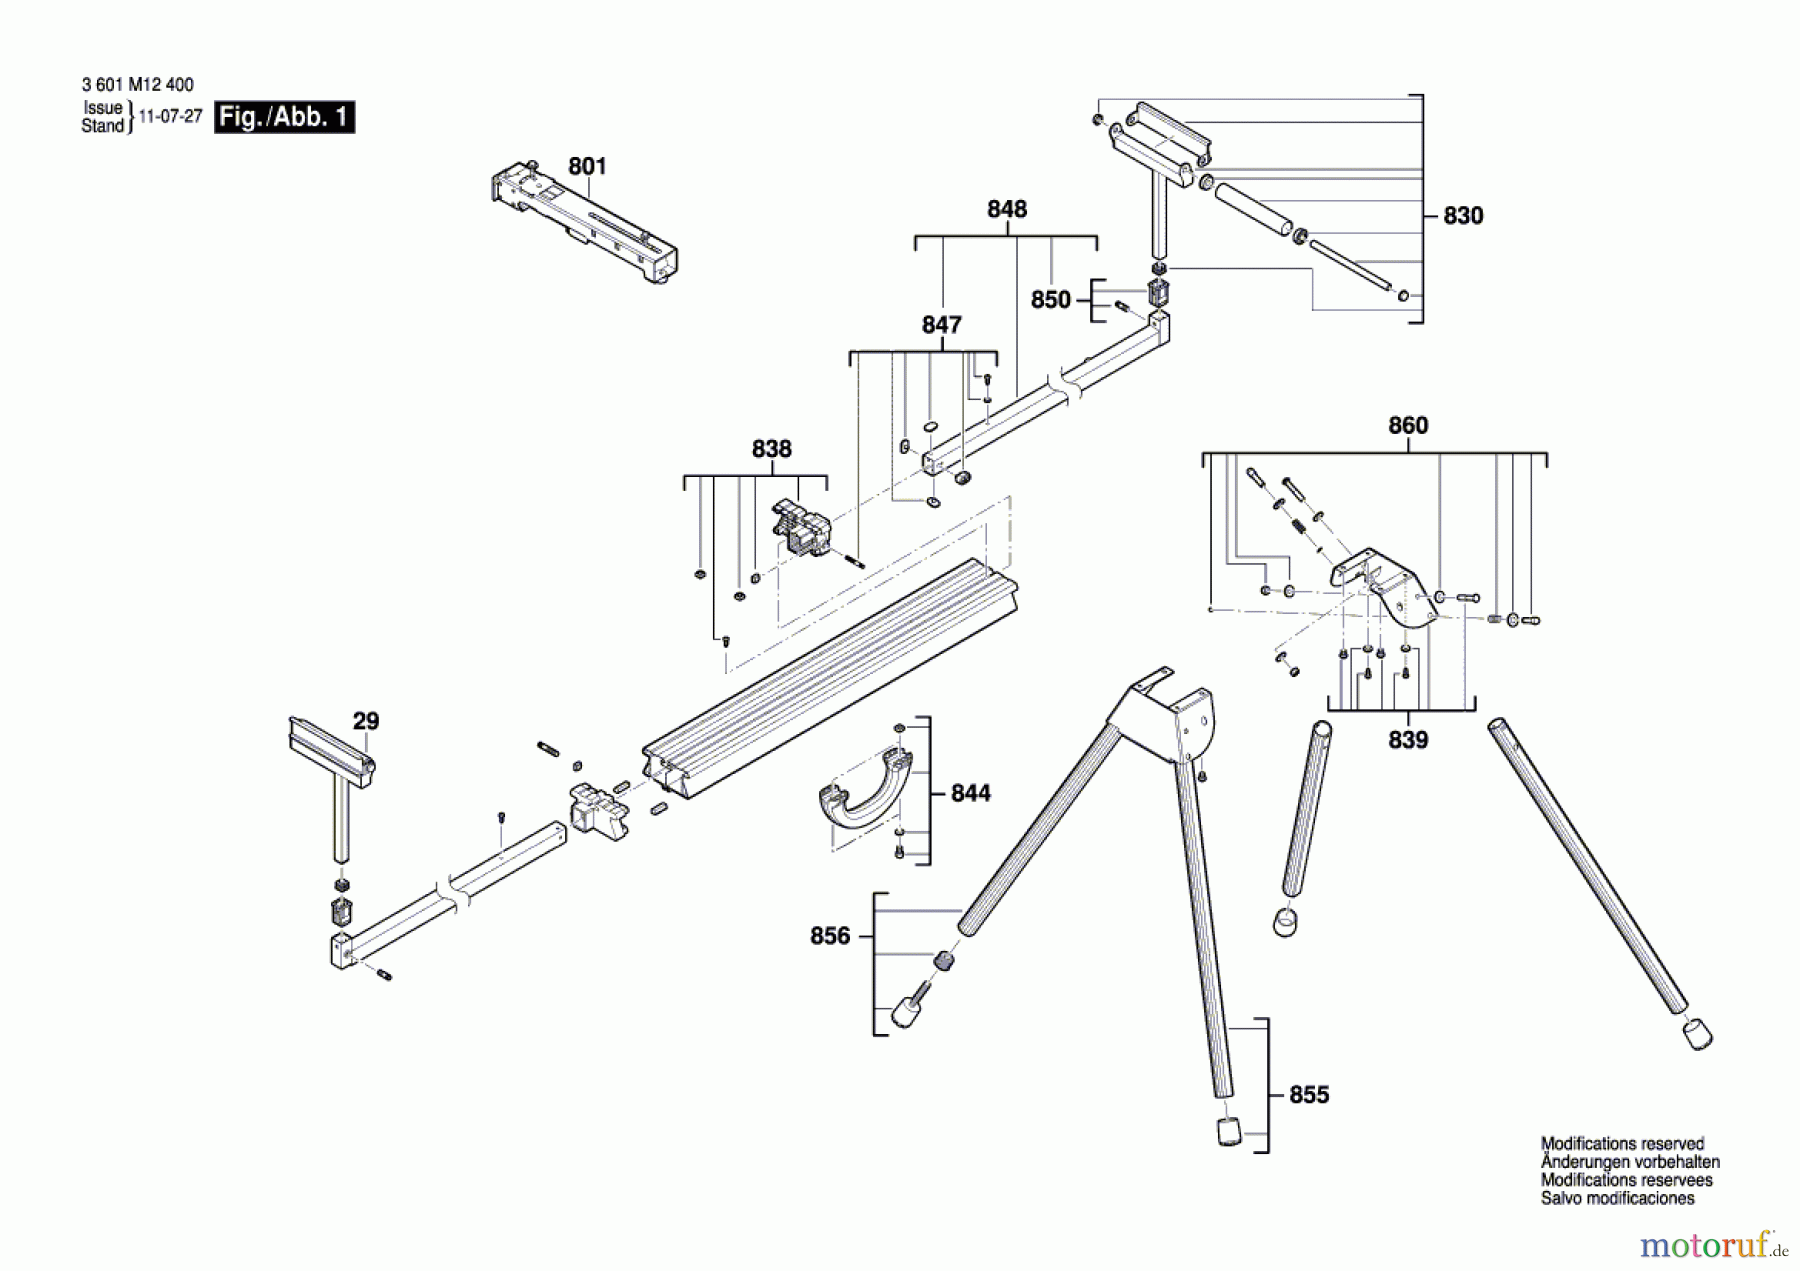  Bosch Werkzeug Arbeitstisch GTA 2500 Seite 1